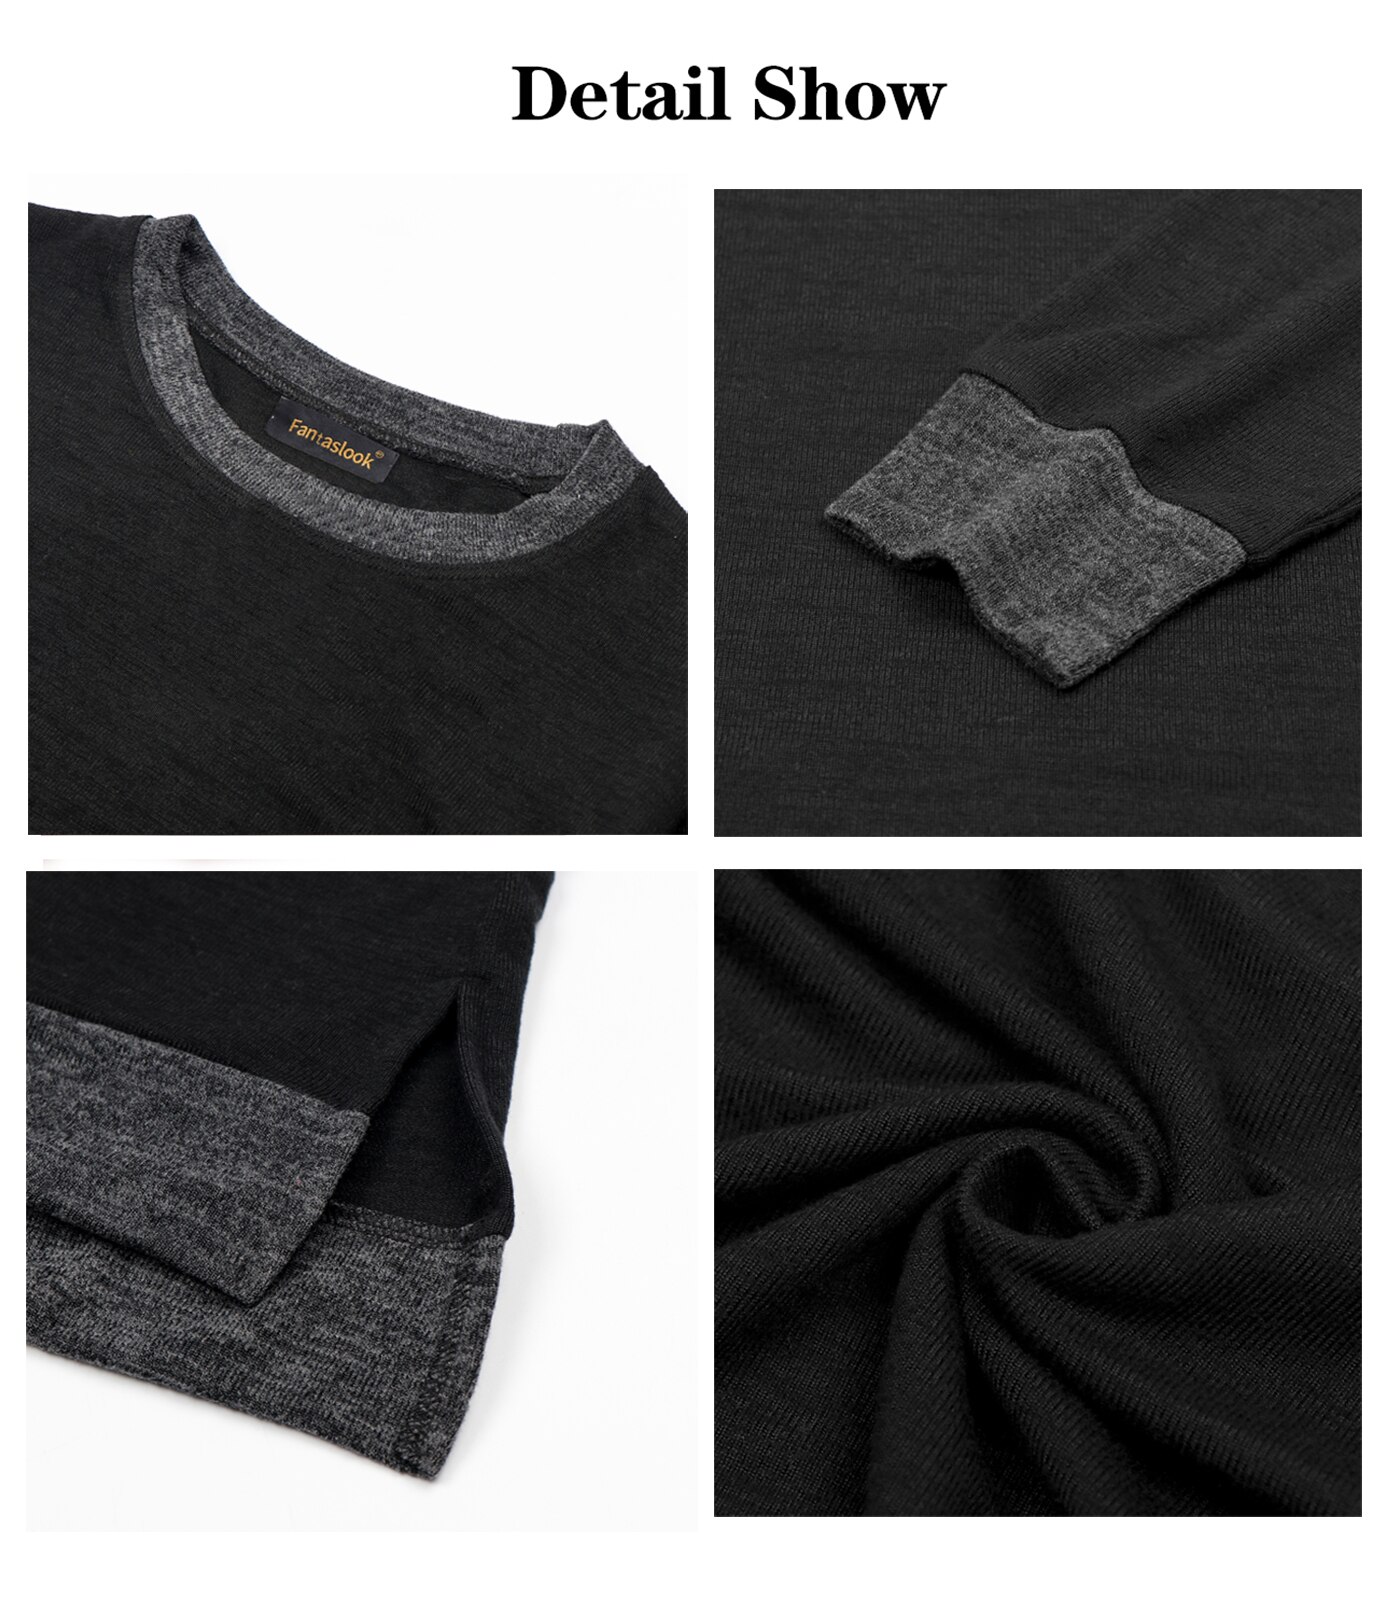 Fantaslook Sweatshirt for Women Long Sleeve Tunic Tops Color Block ...